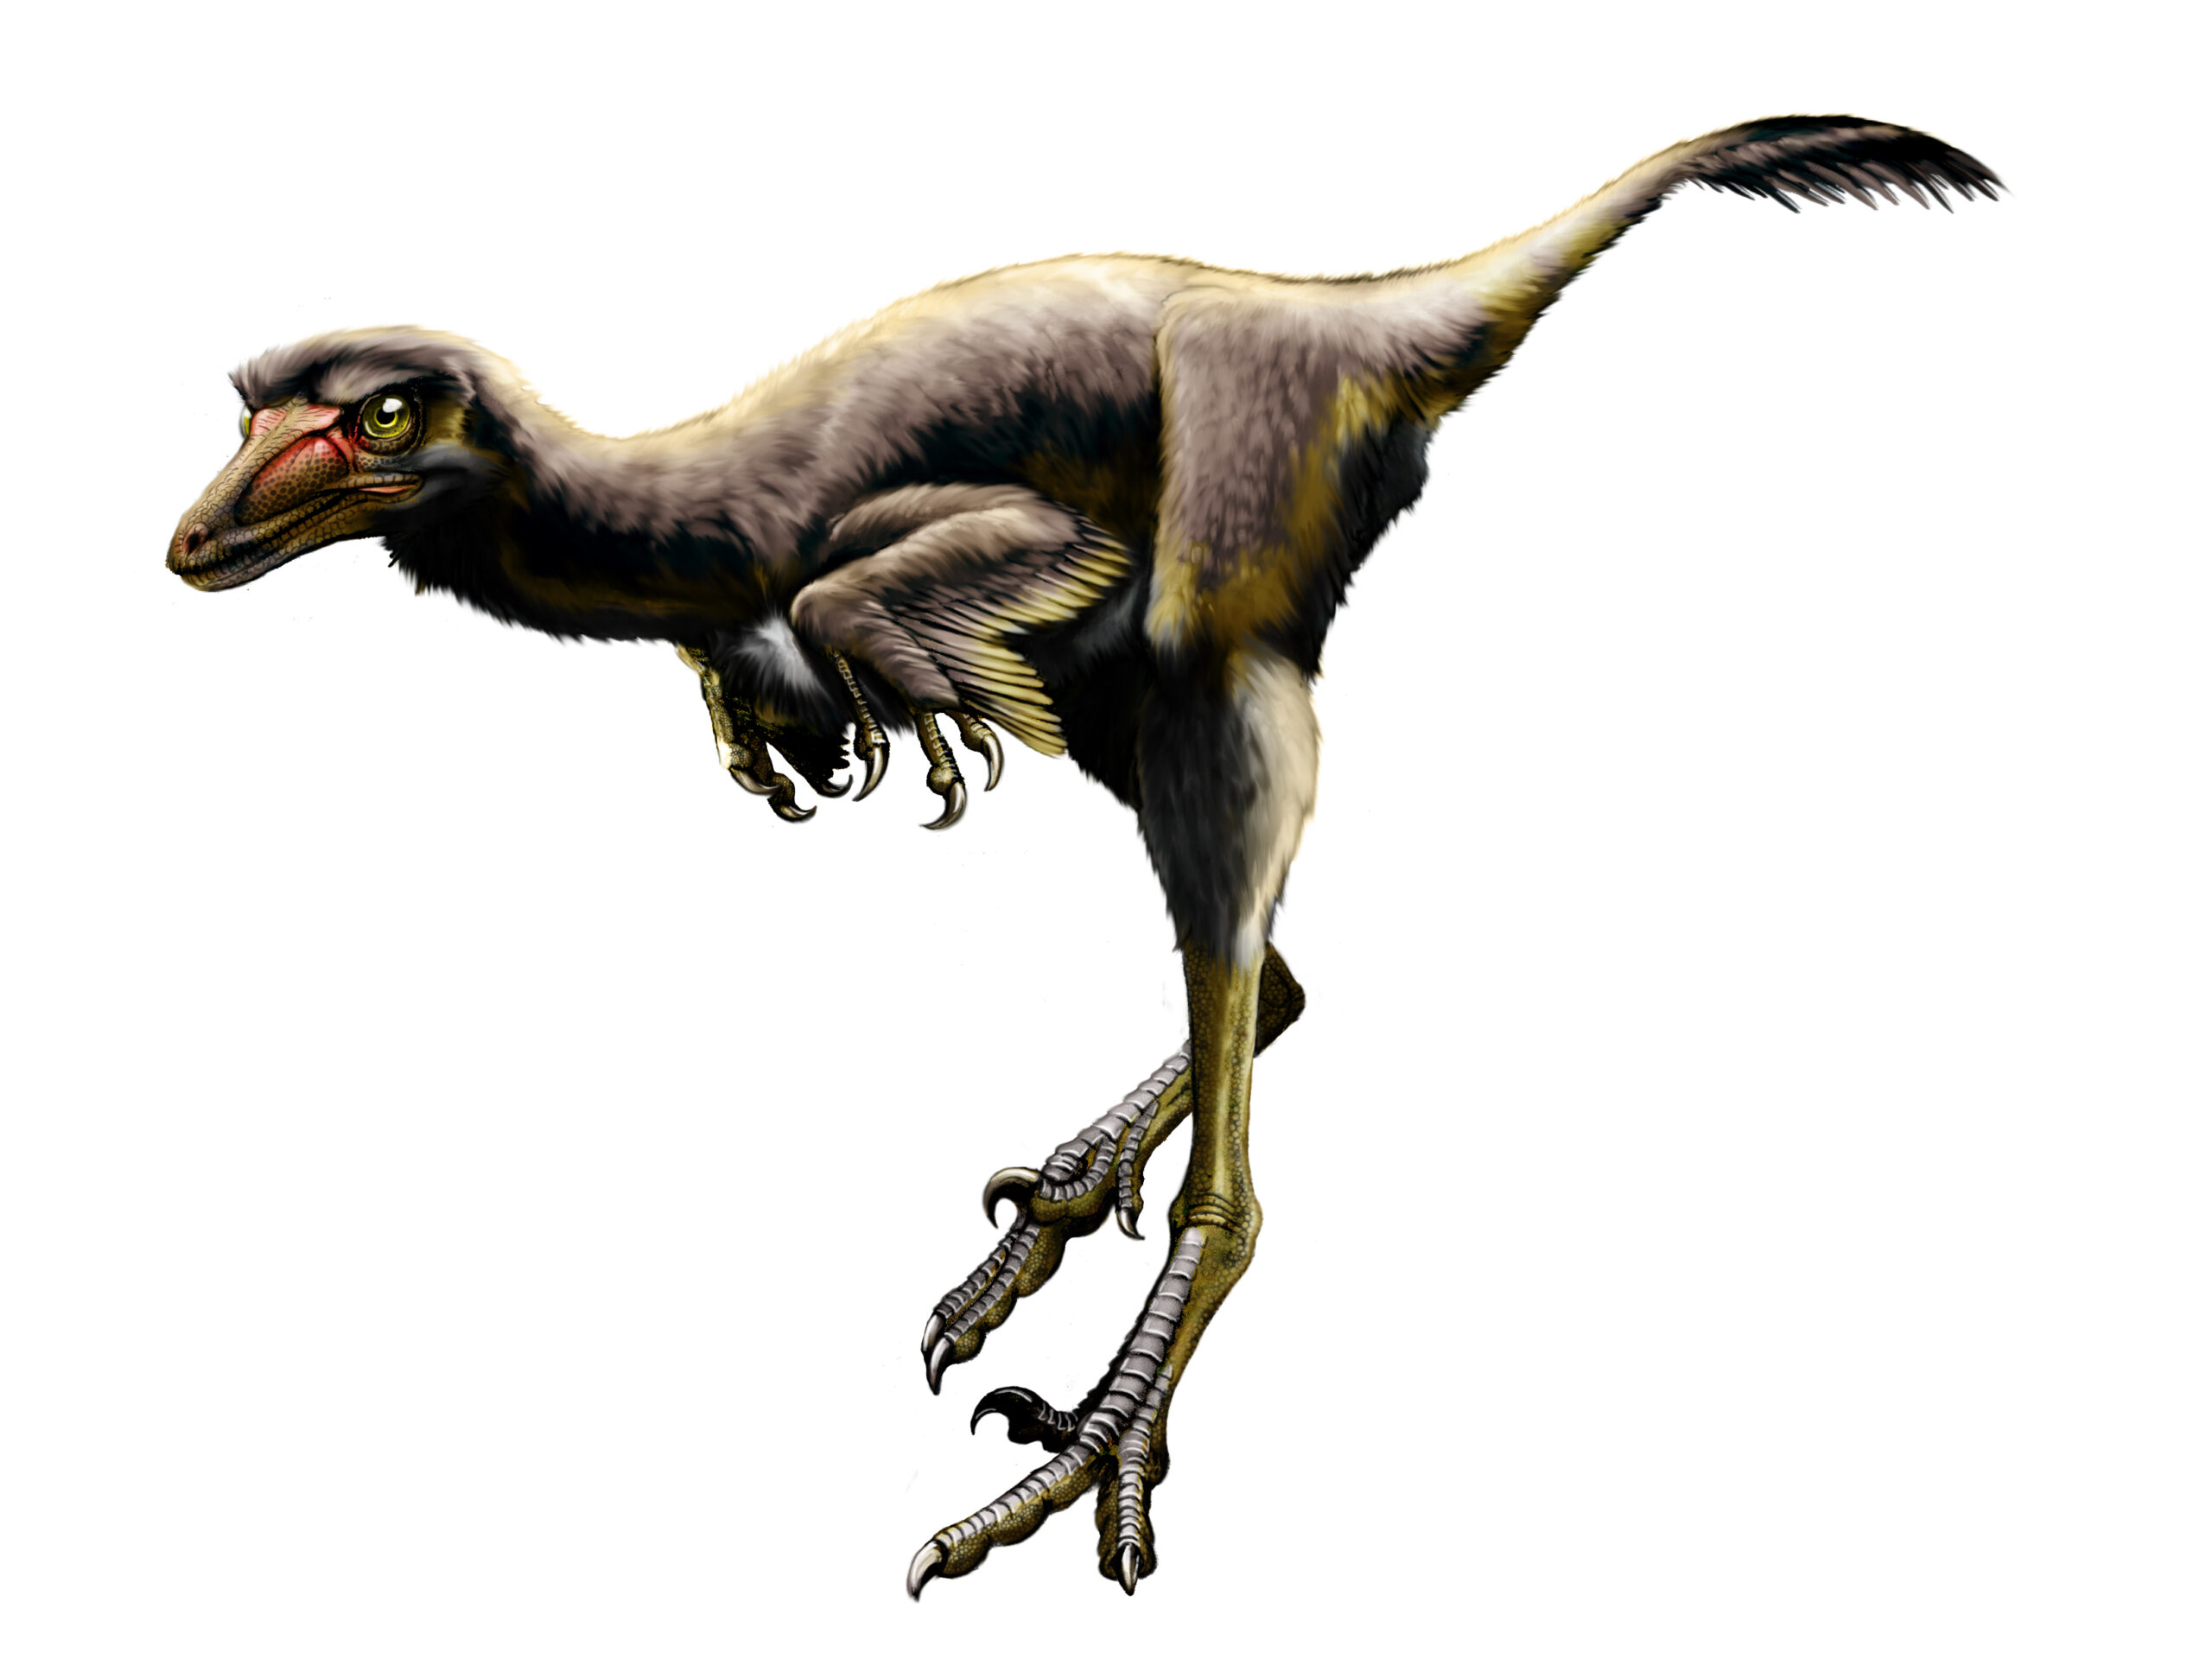 UW-Parkside professor helps discover new species of raptor dinosaur